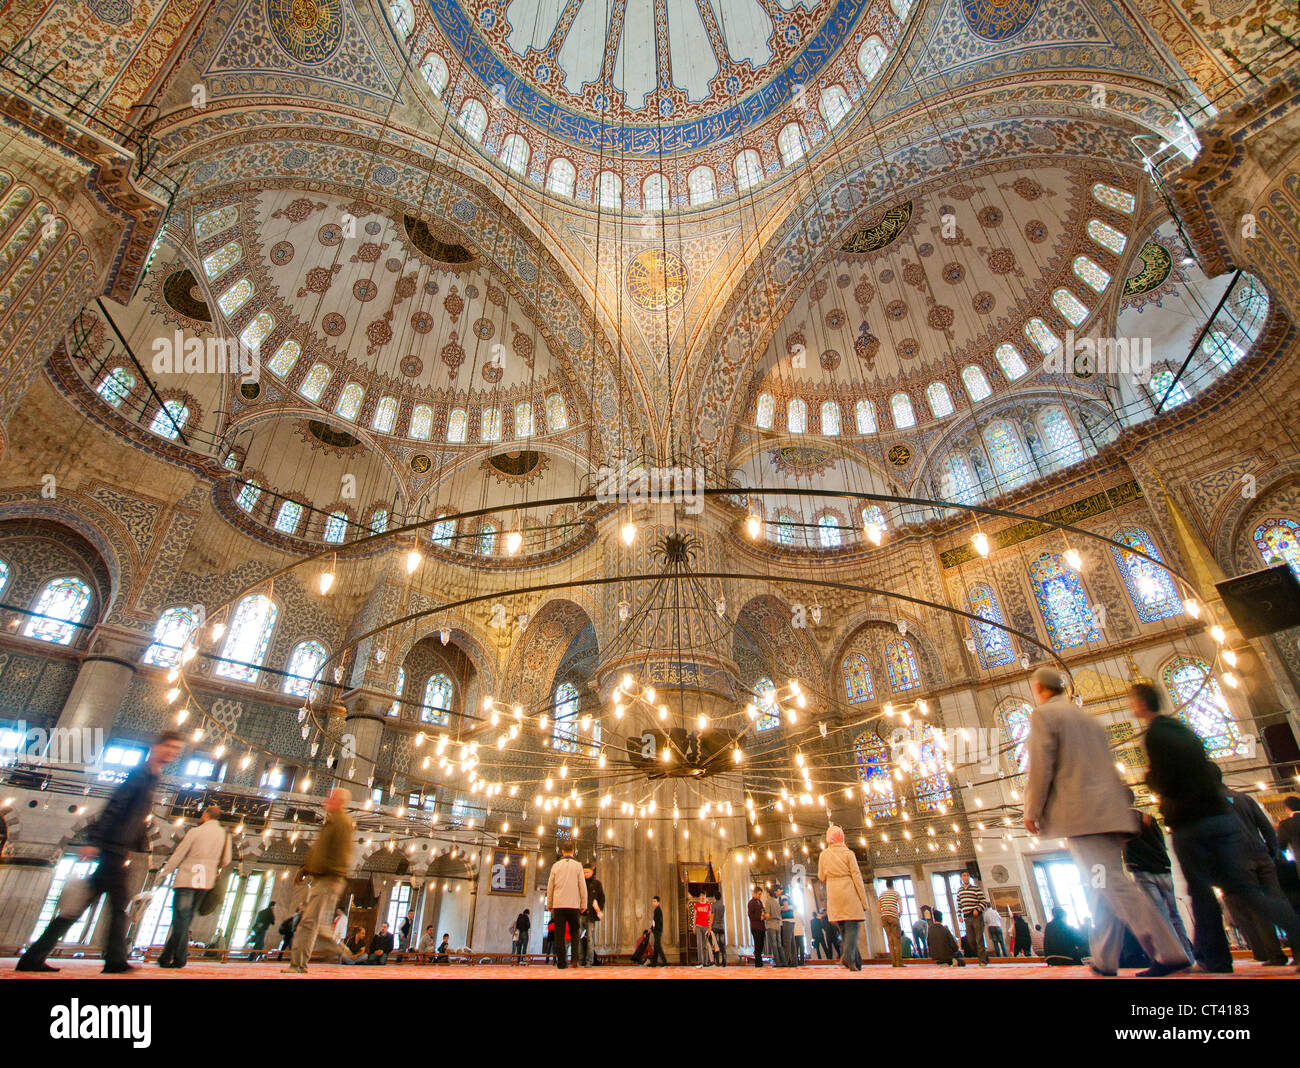 Les gens à l'intérieur de la Mosquée Bleue, également connu sous le nom de mosquée Sultan Ahmed à Istanbul Turquie Banque D'Images